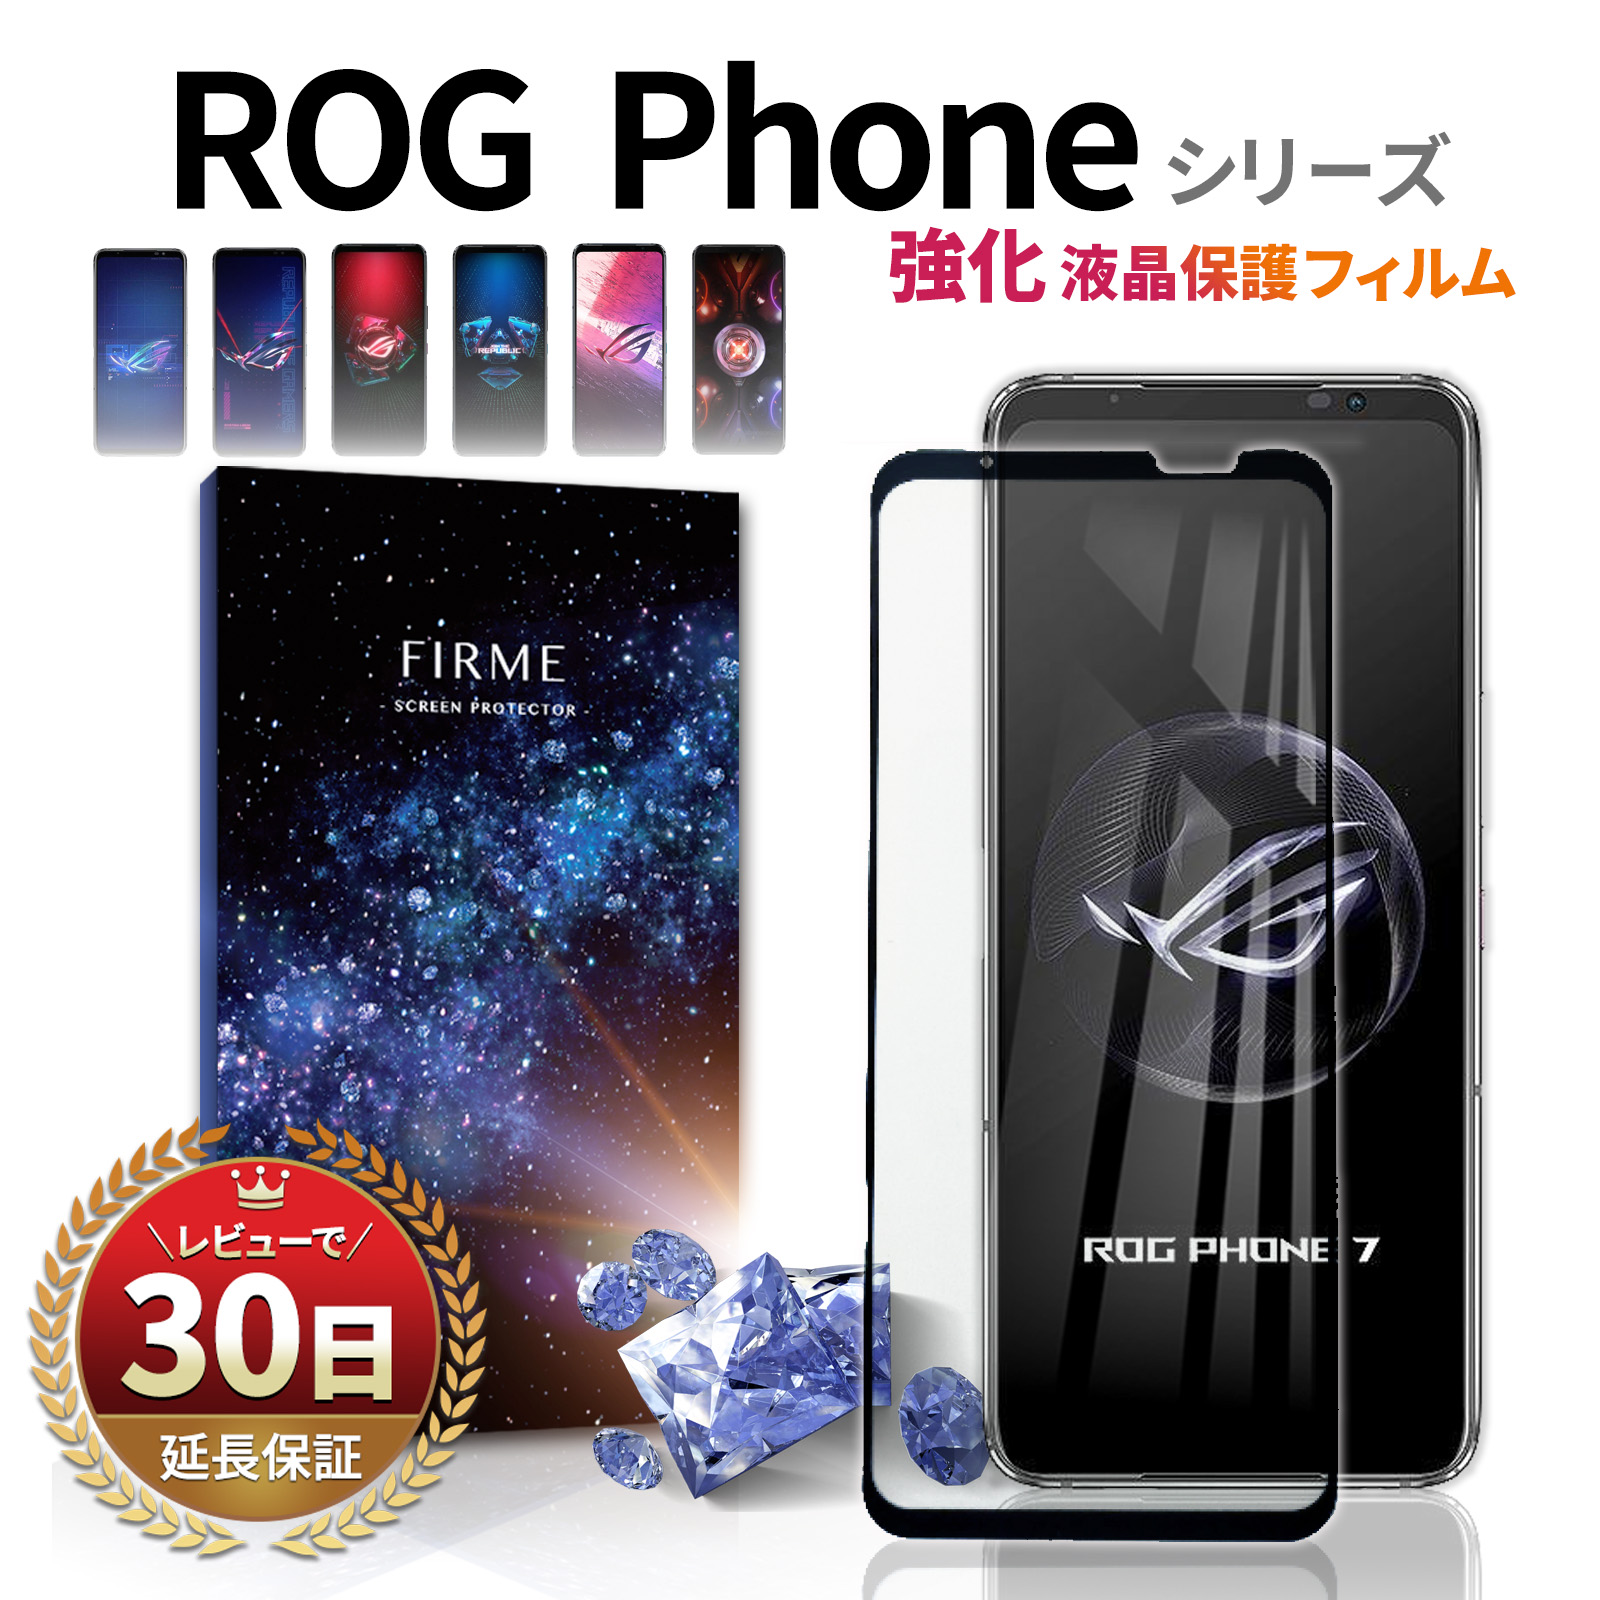 今だけ限定価格 Asus Rog Phone 5 6 78インチ 機種で使える スマホ フロアスタンド と 反射防止 液晶保護フィルムセット メール便送料無料 目玉 送料無料 Www Iacymperu Org